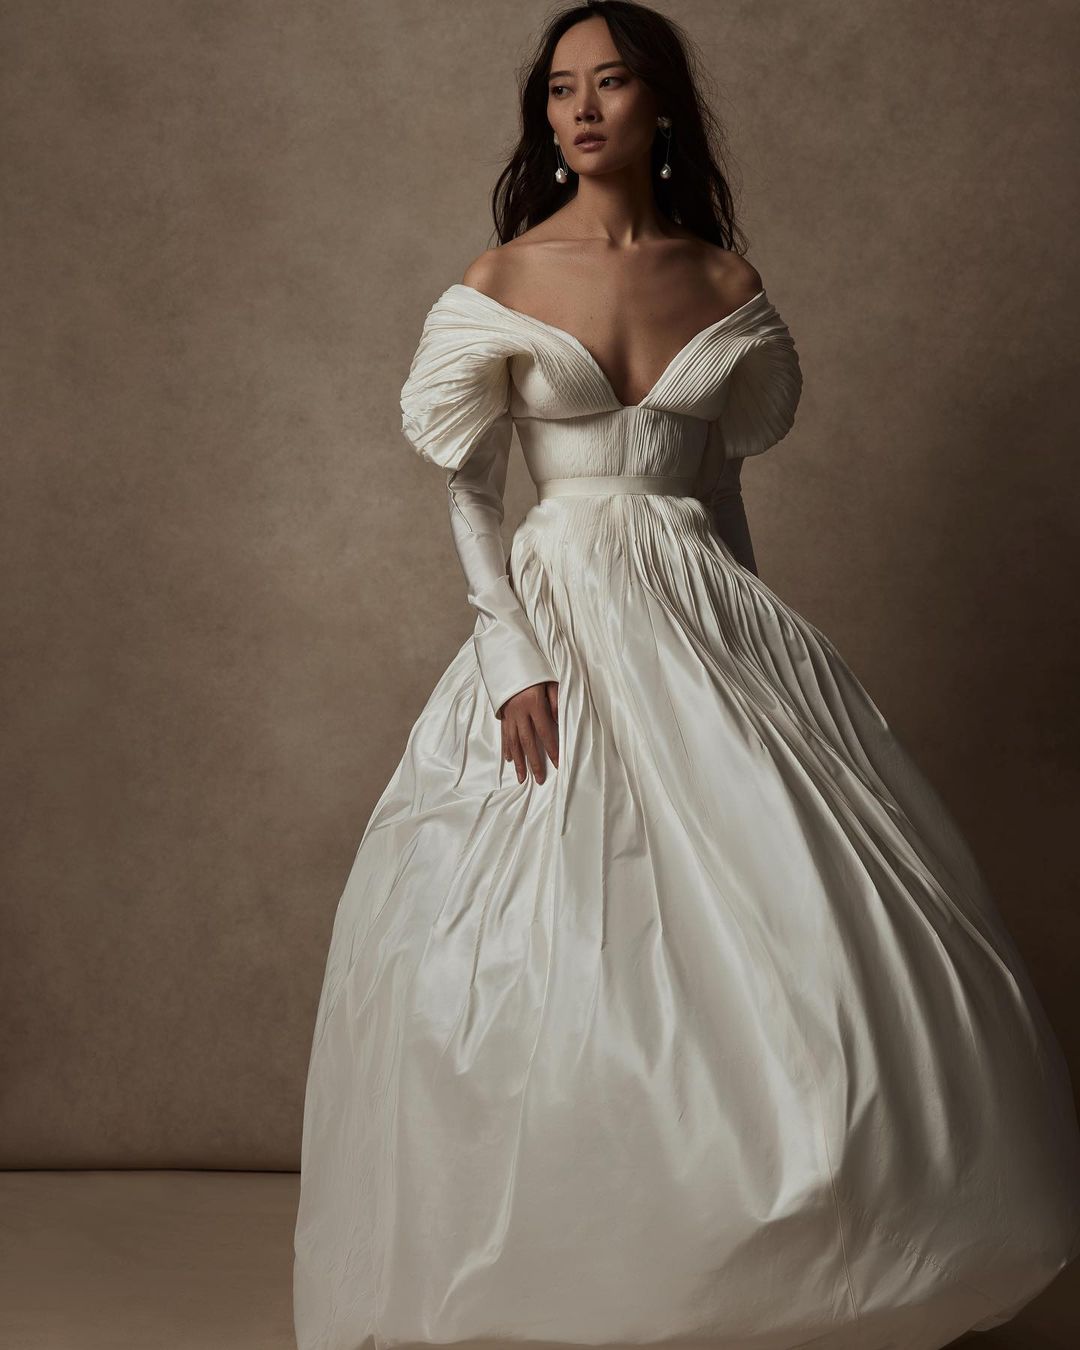 Tabitha Gown by Danielle Frankel Bridal Fashion forward Ballgowns for the Alternative Cool Bride 1 - 20 chiếc váy dạ hội tuyên bố dành cho cô dâu sành điệu, thời trang